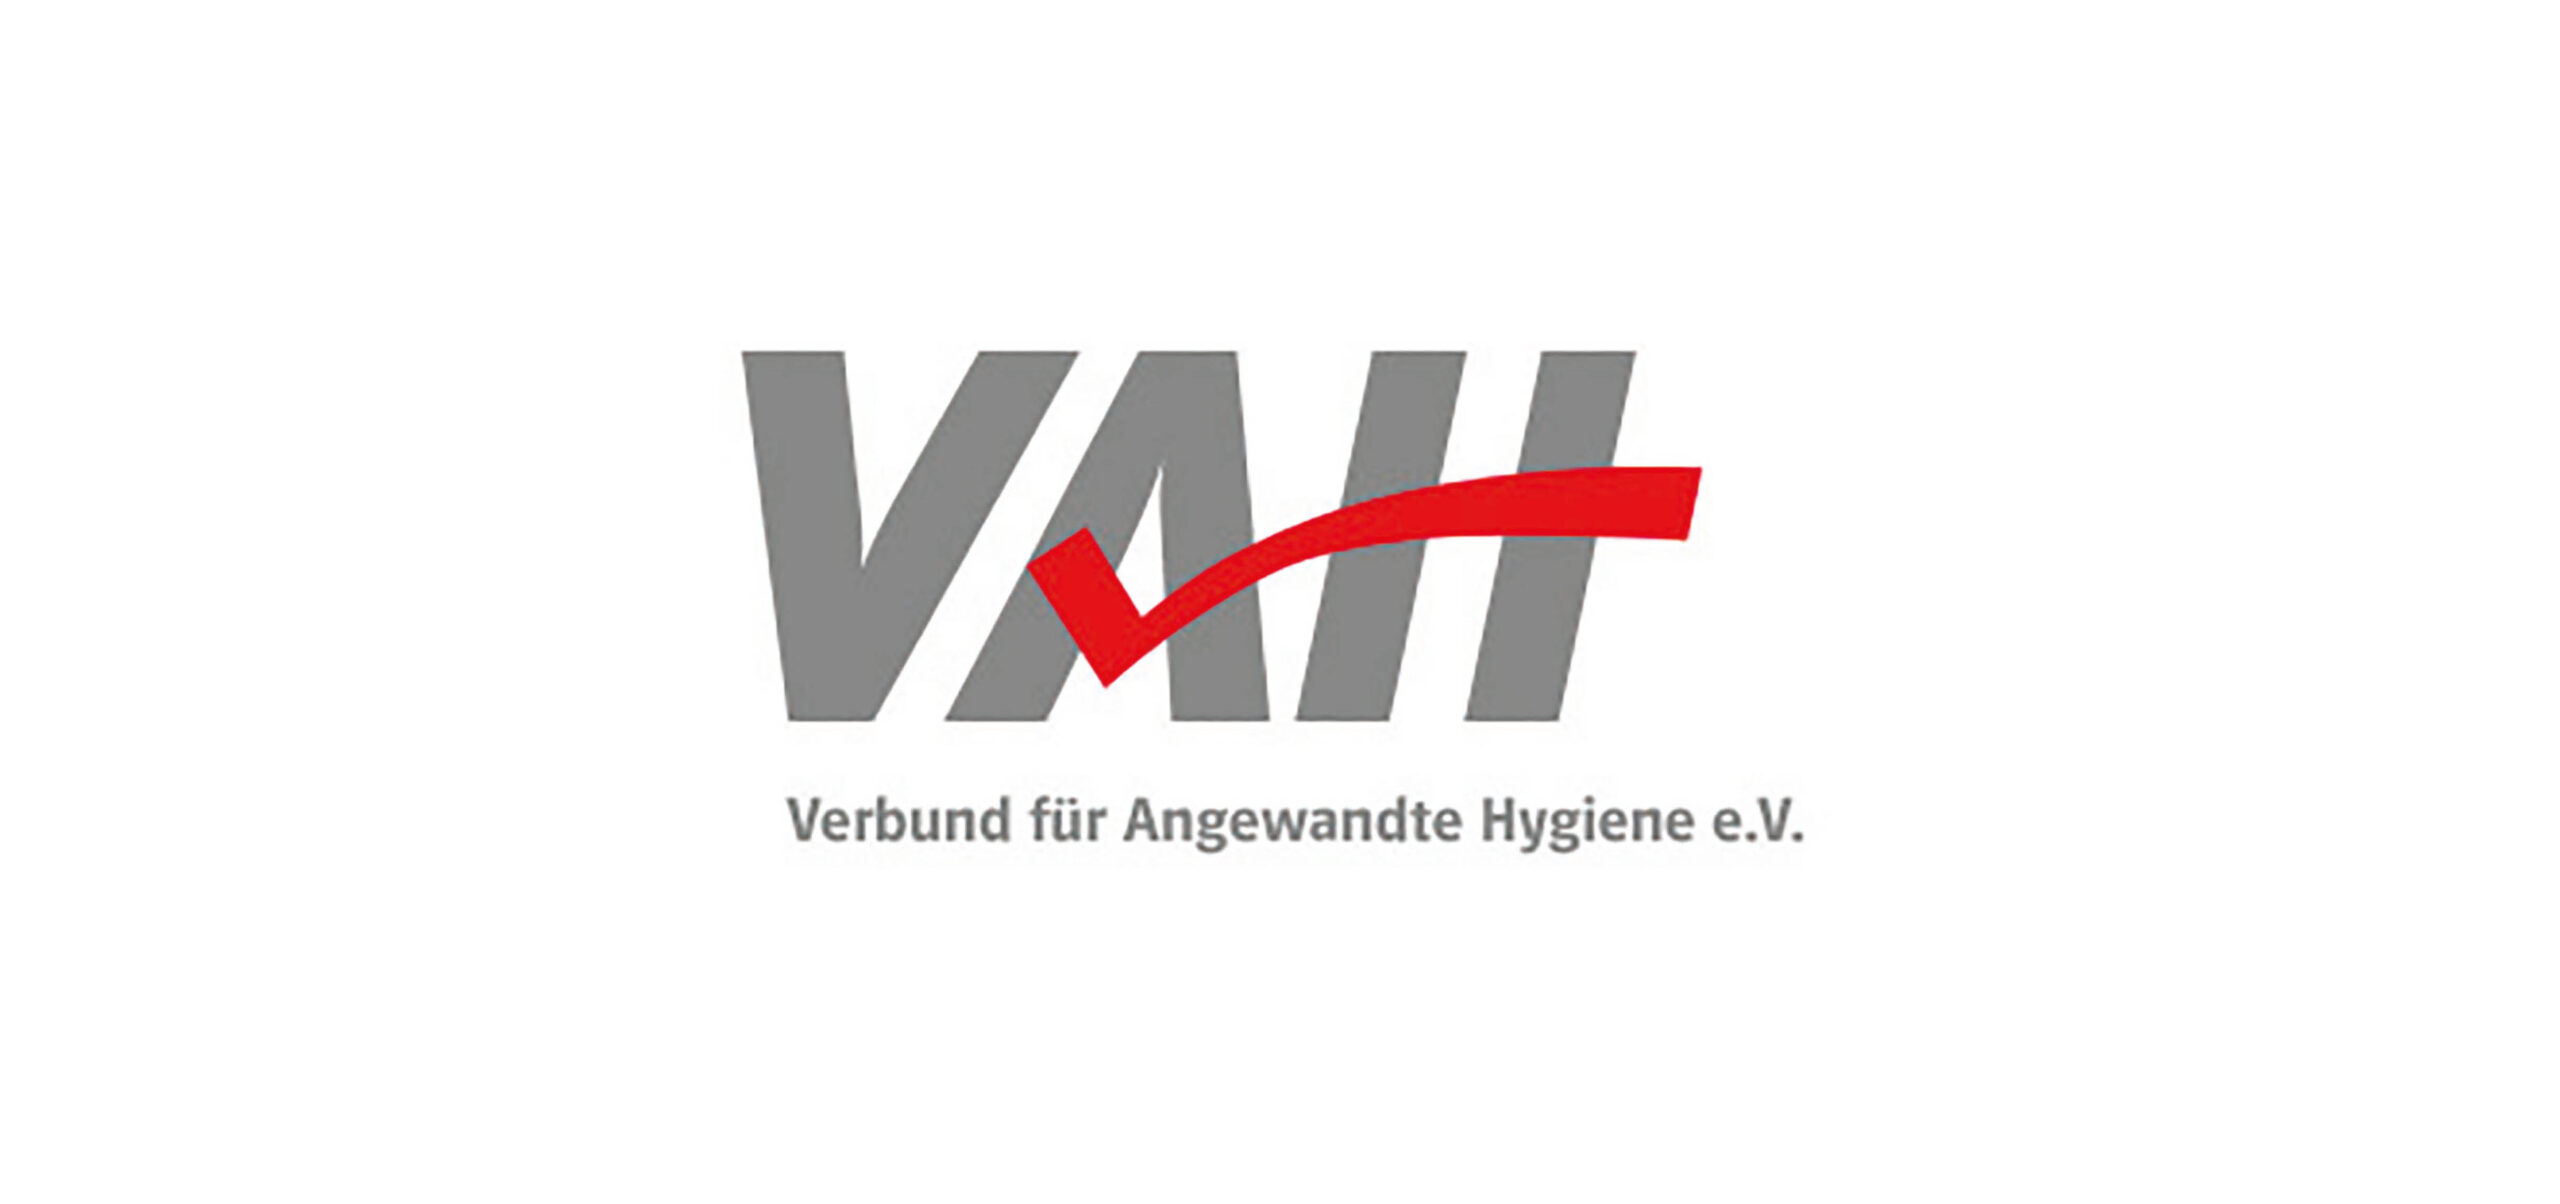 VAH-zertifikat-verbund-für-angewandte-hygiene